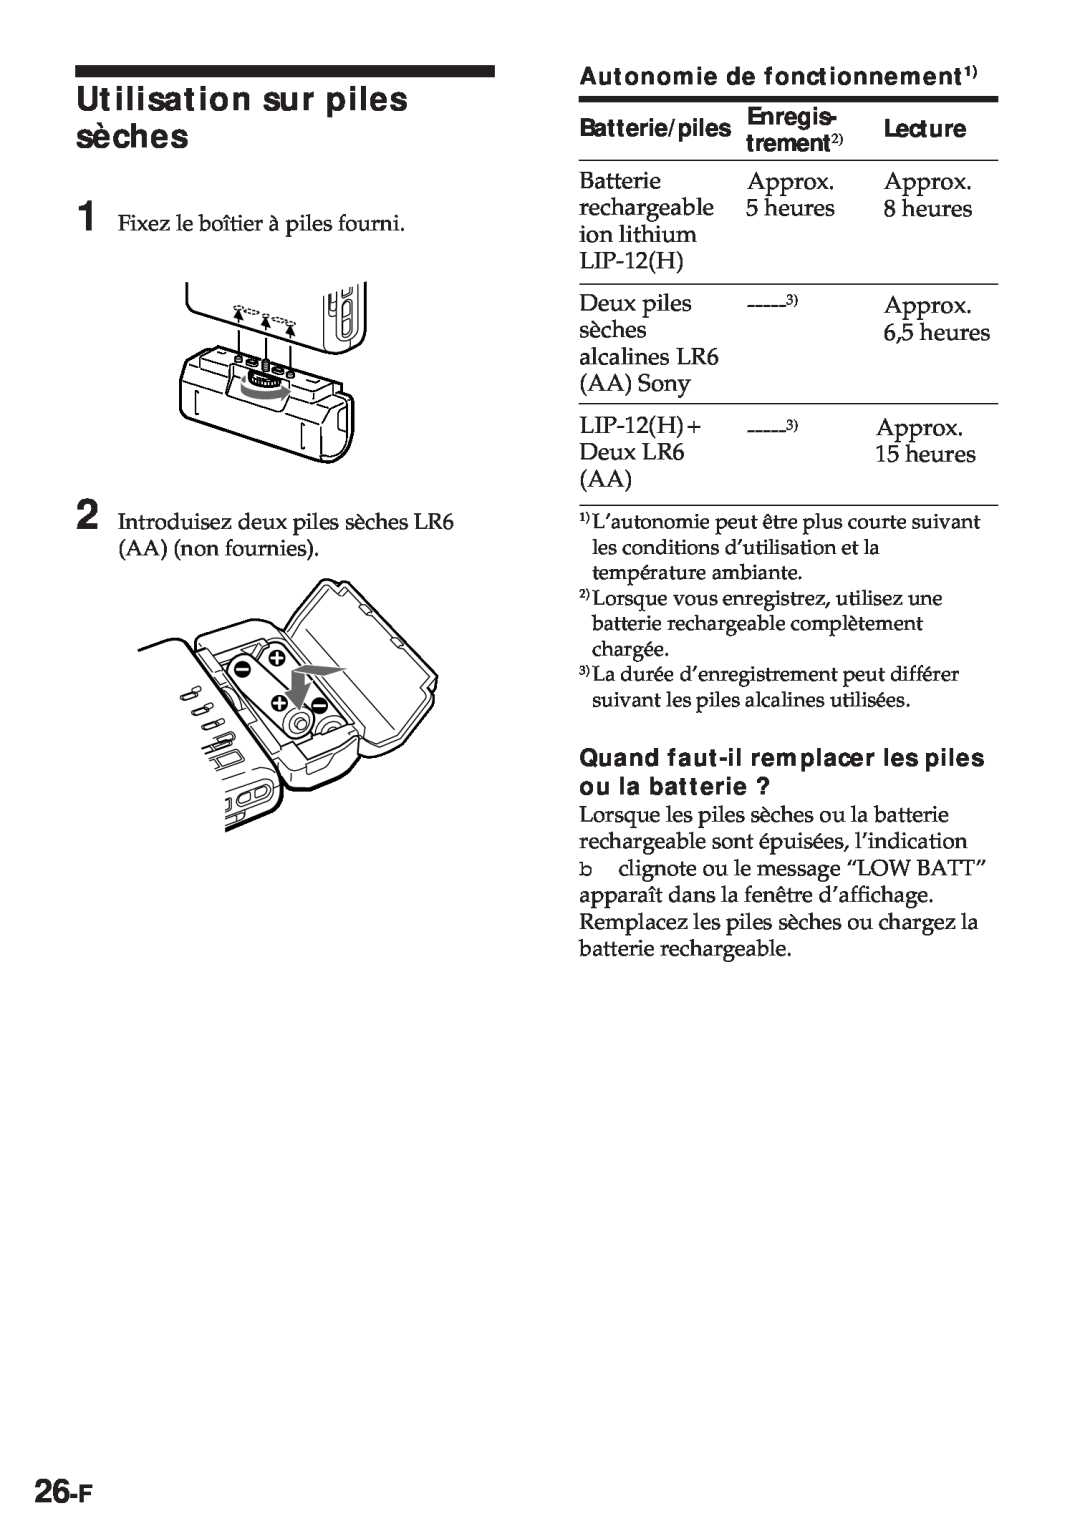 Sony MZ-R30 Utilisation sur piles sèches, 26-F, Autonomie de fonctionnement1, Enregis, Lecture, trement2 